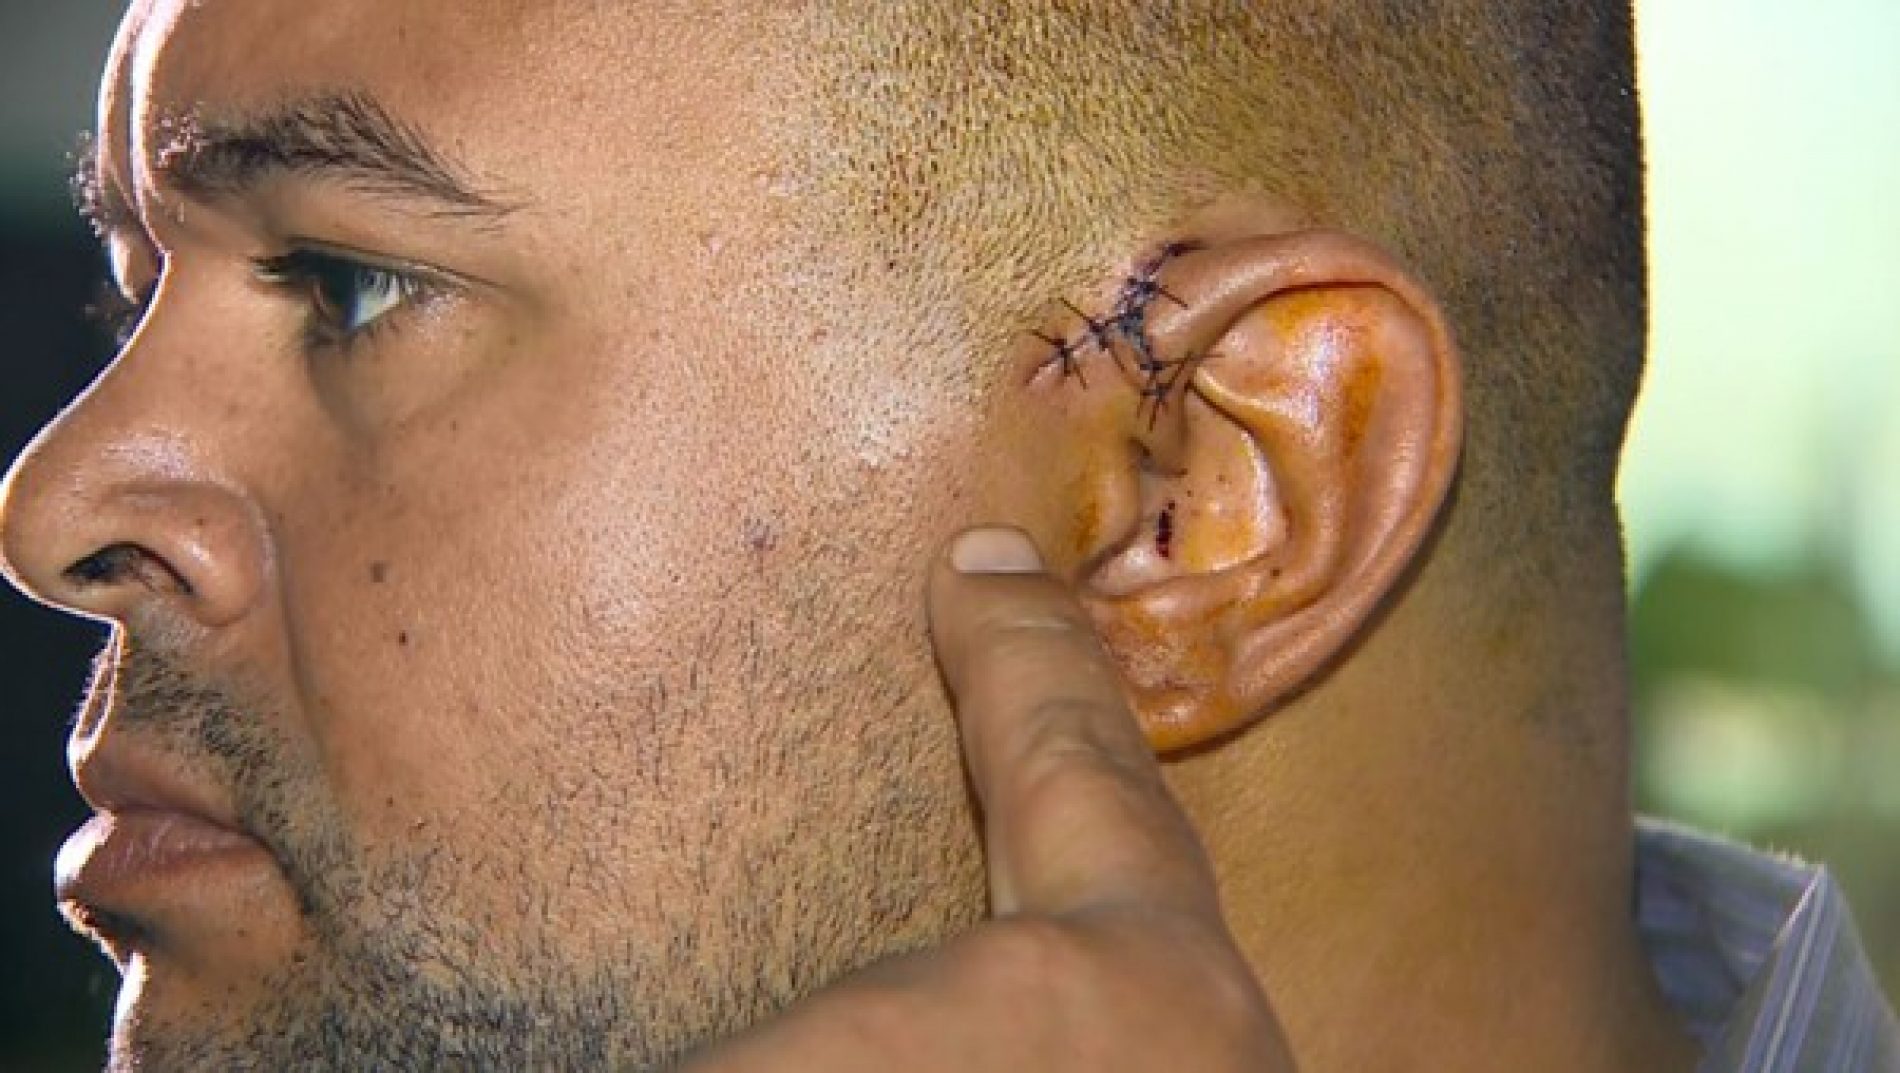 REGIÃO: Homem quase perdeu orelha com garrafada dada por criminosos